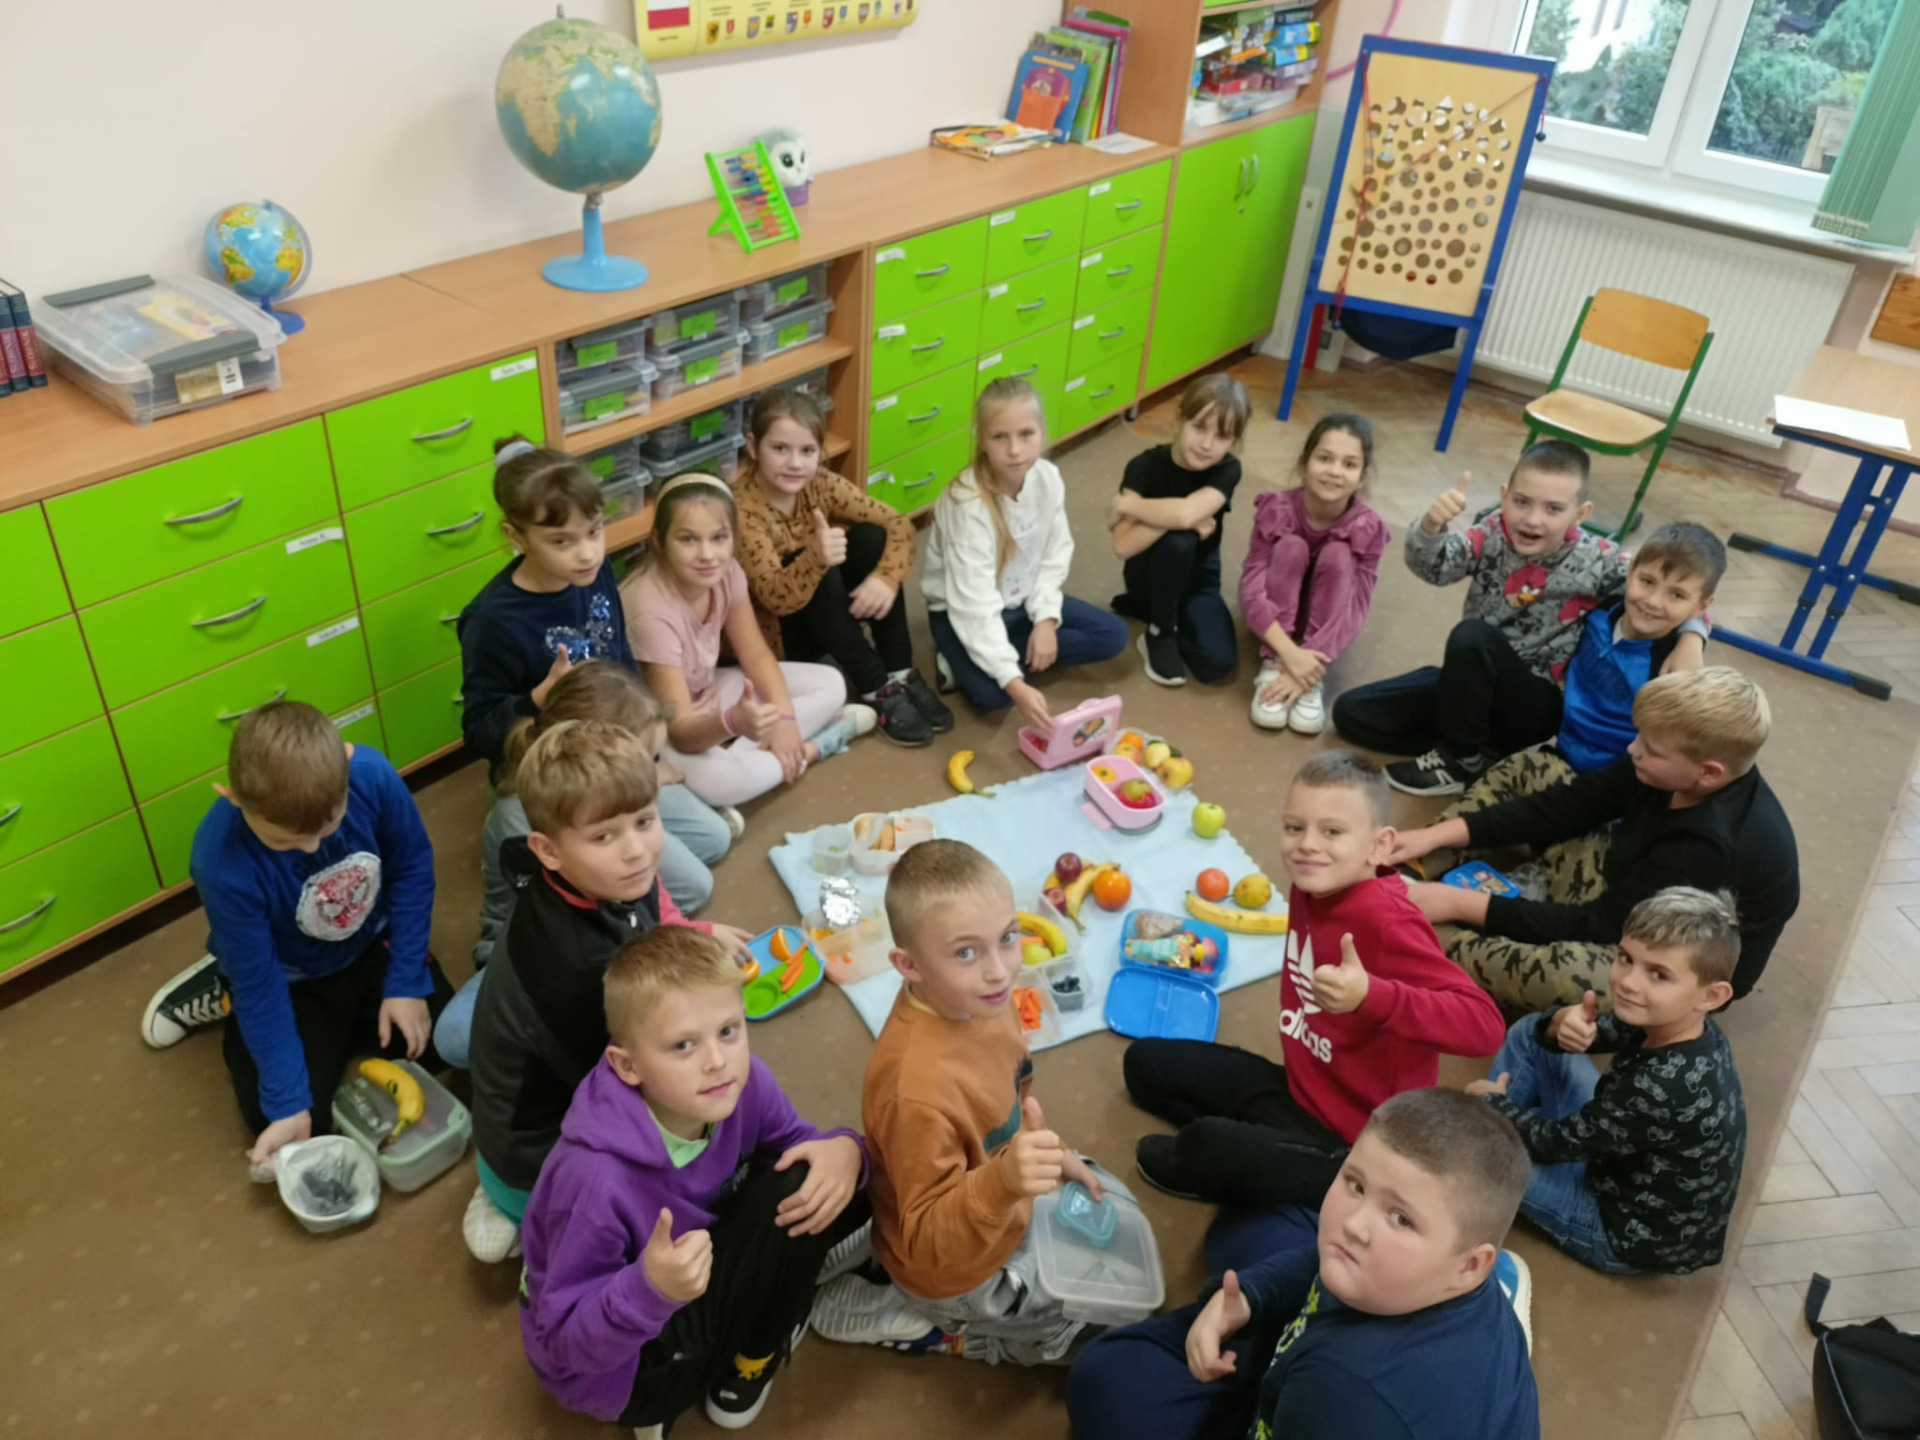 Uczniowie siedzą na podłodze i spożywają zdrowe śniadanie.